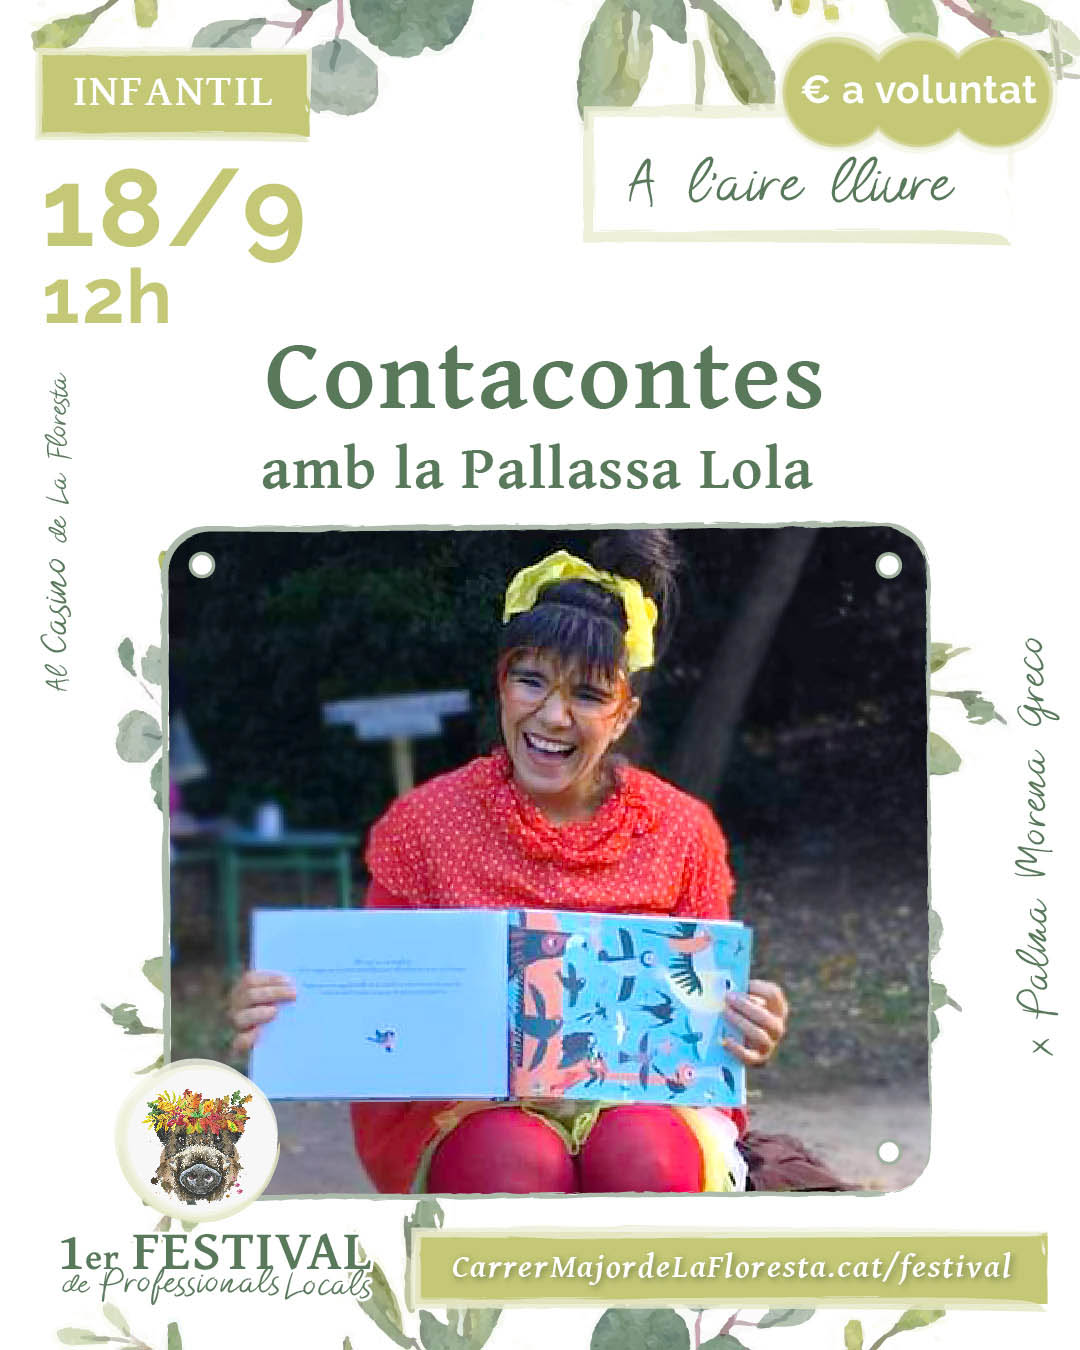 Cuenta cuentos con La Pallassa Lola